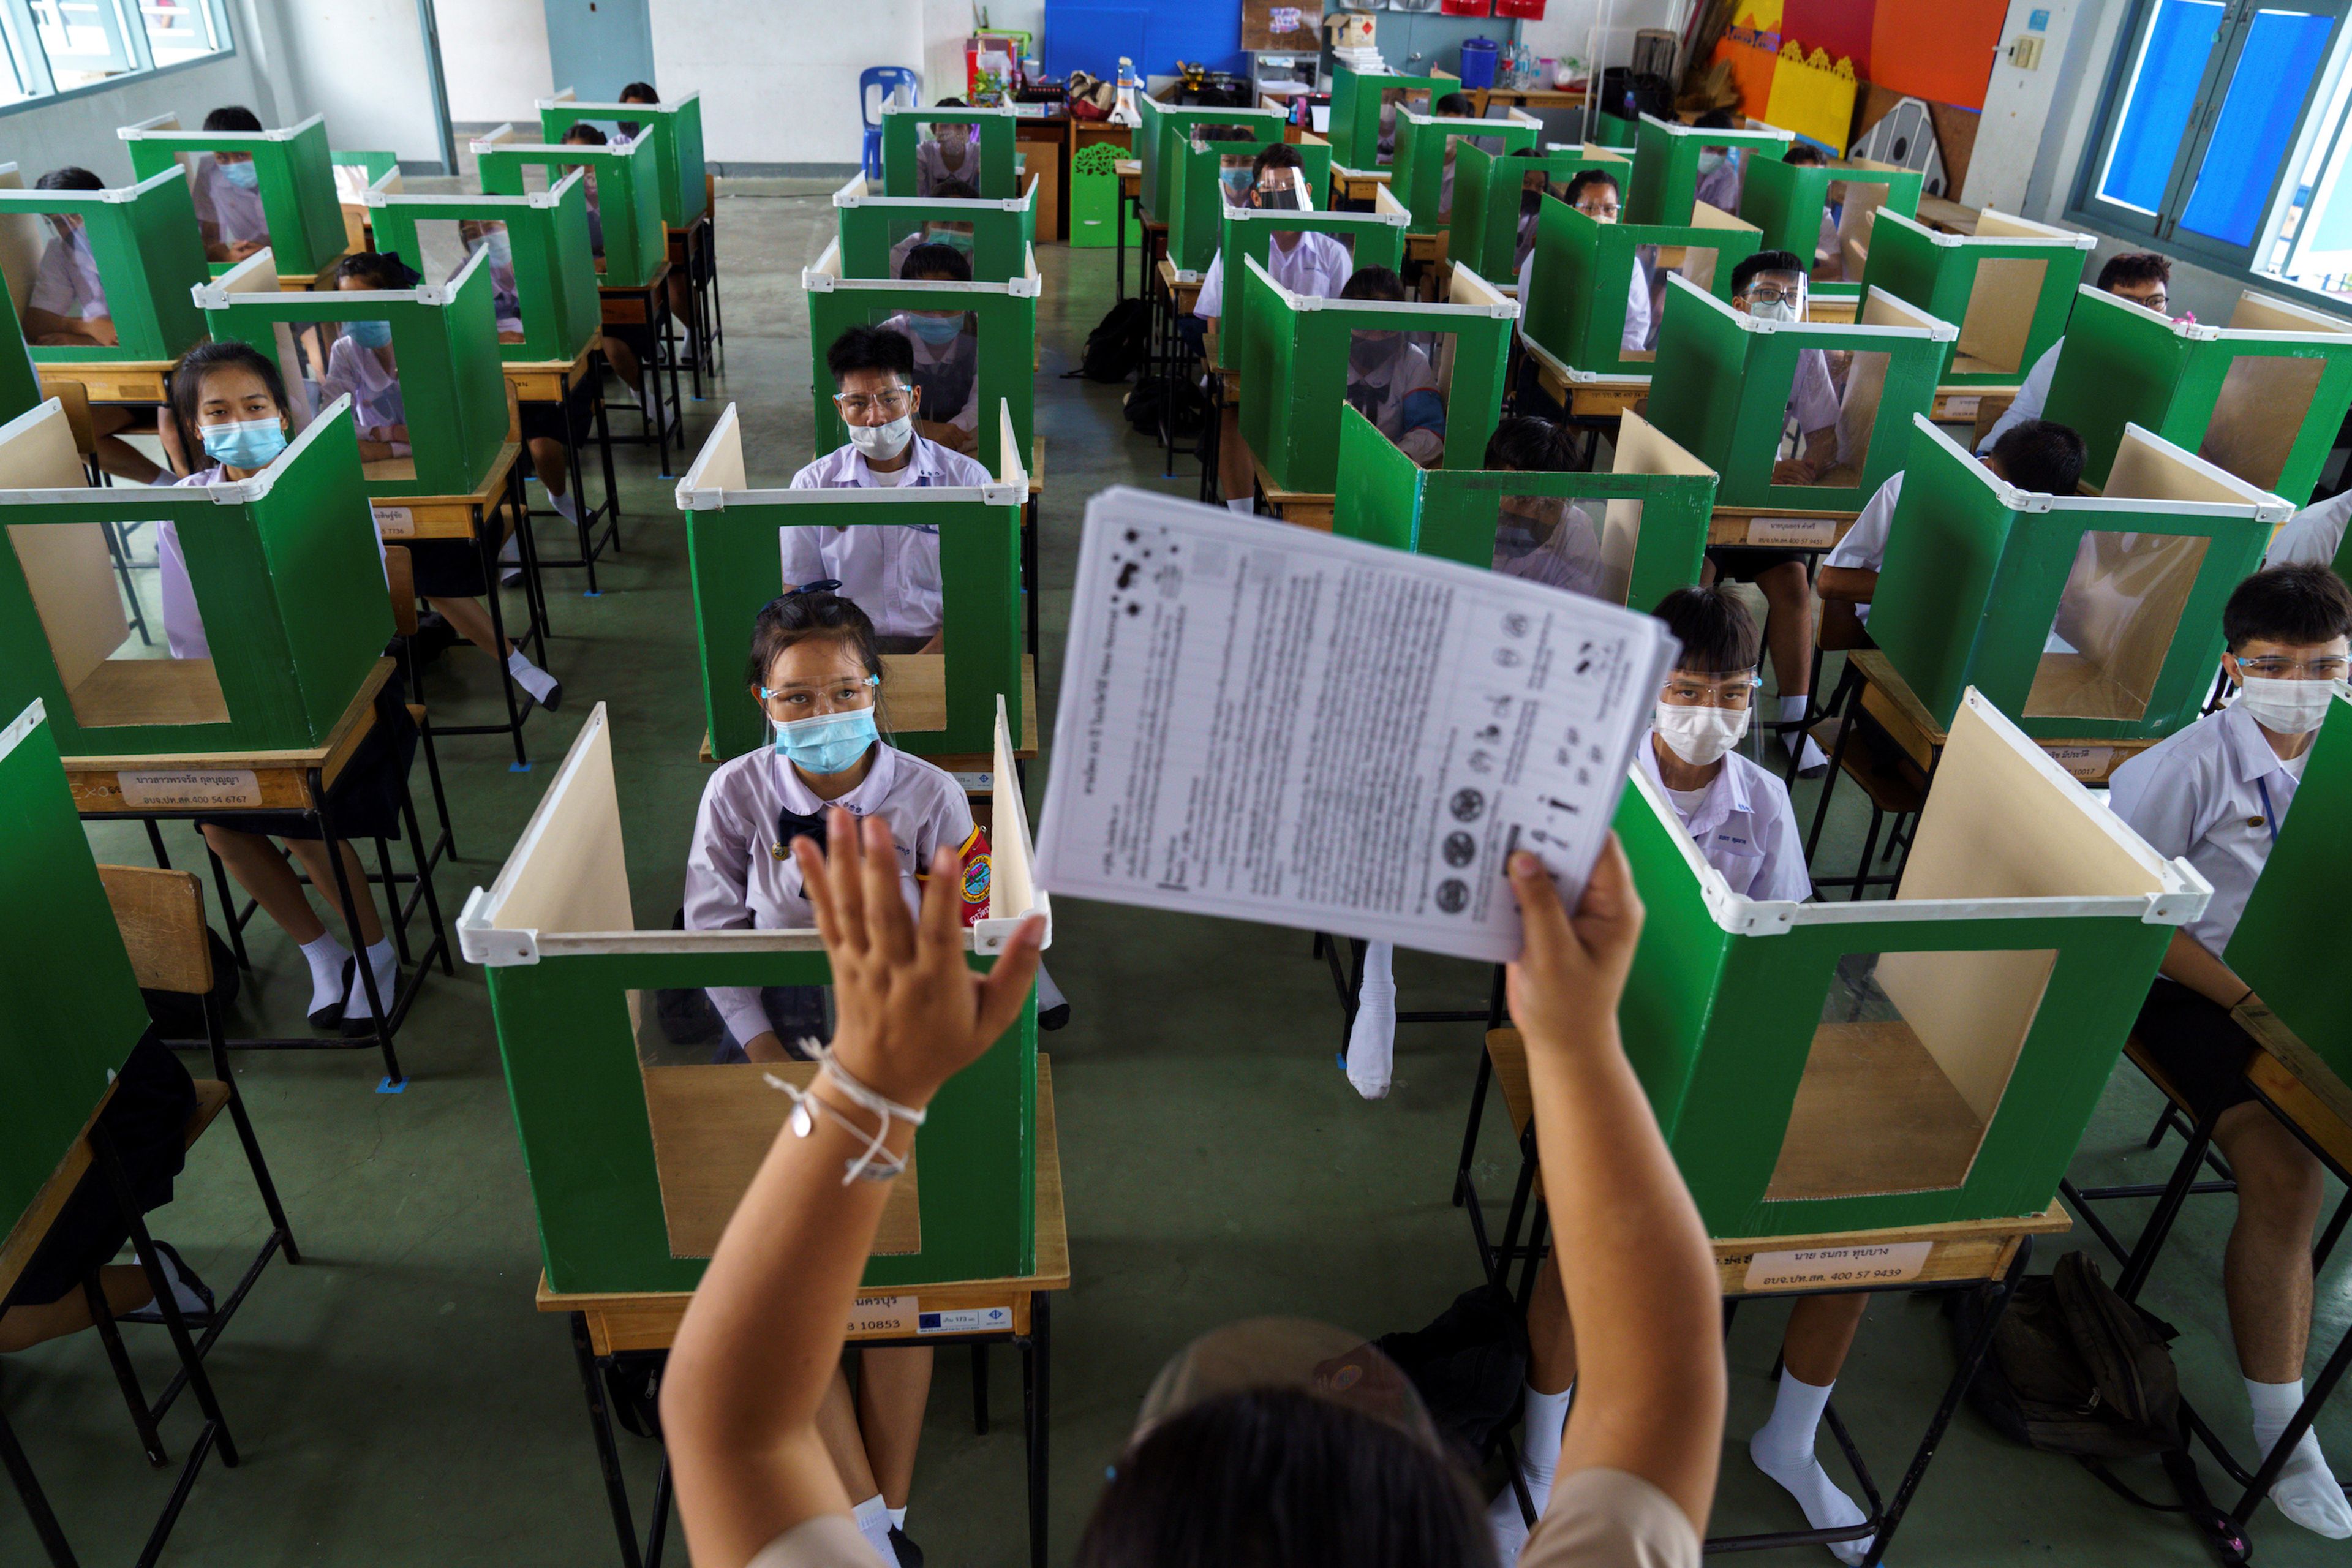 Una escuela de Tailandia reabre tras la pandemia del coronavirus con medidas de distanciamiento físico entre los alumnos